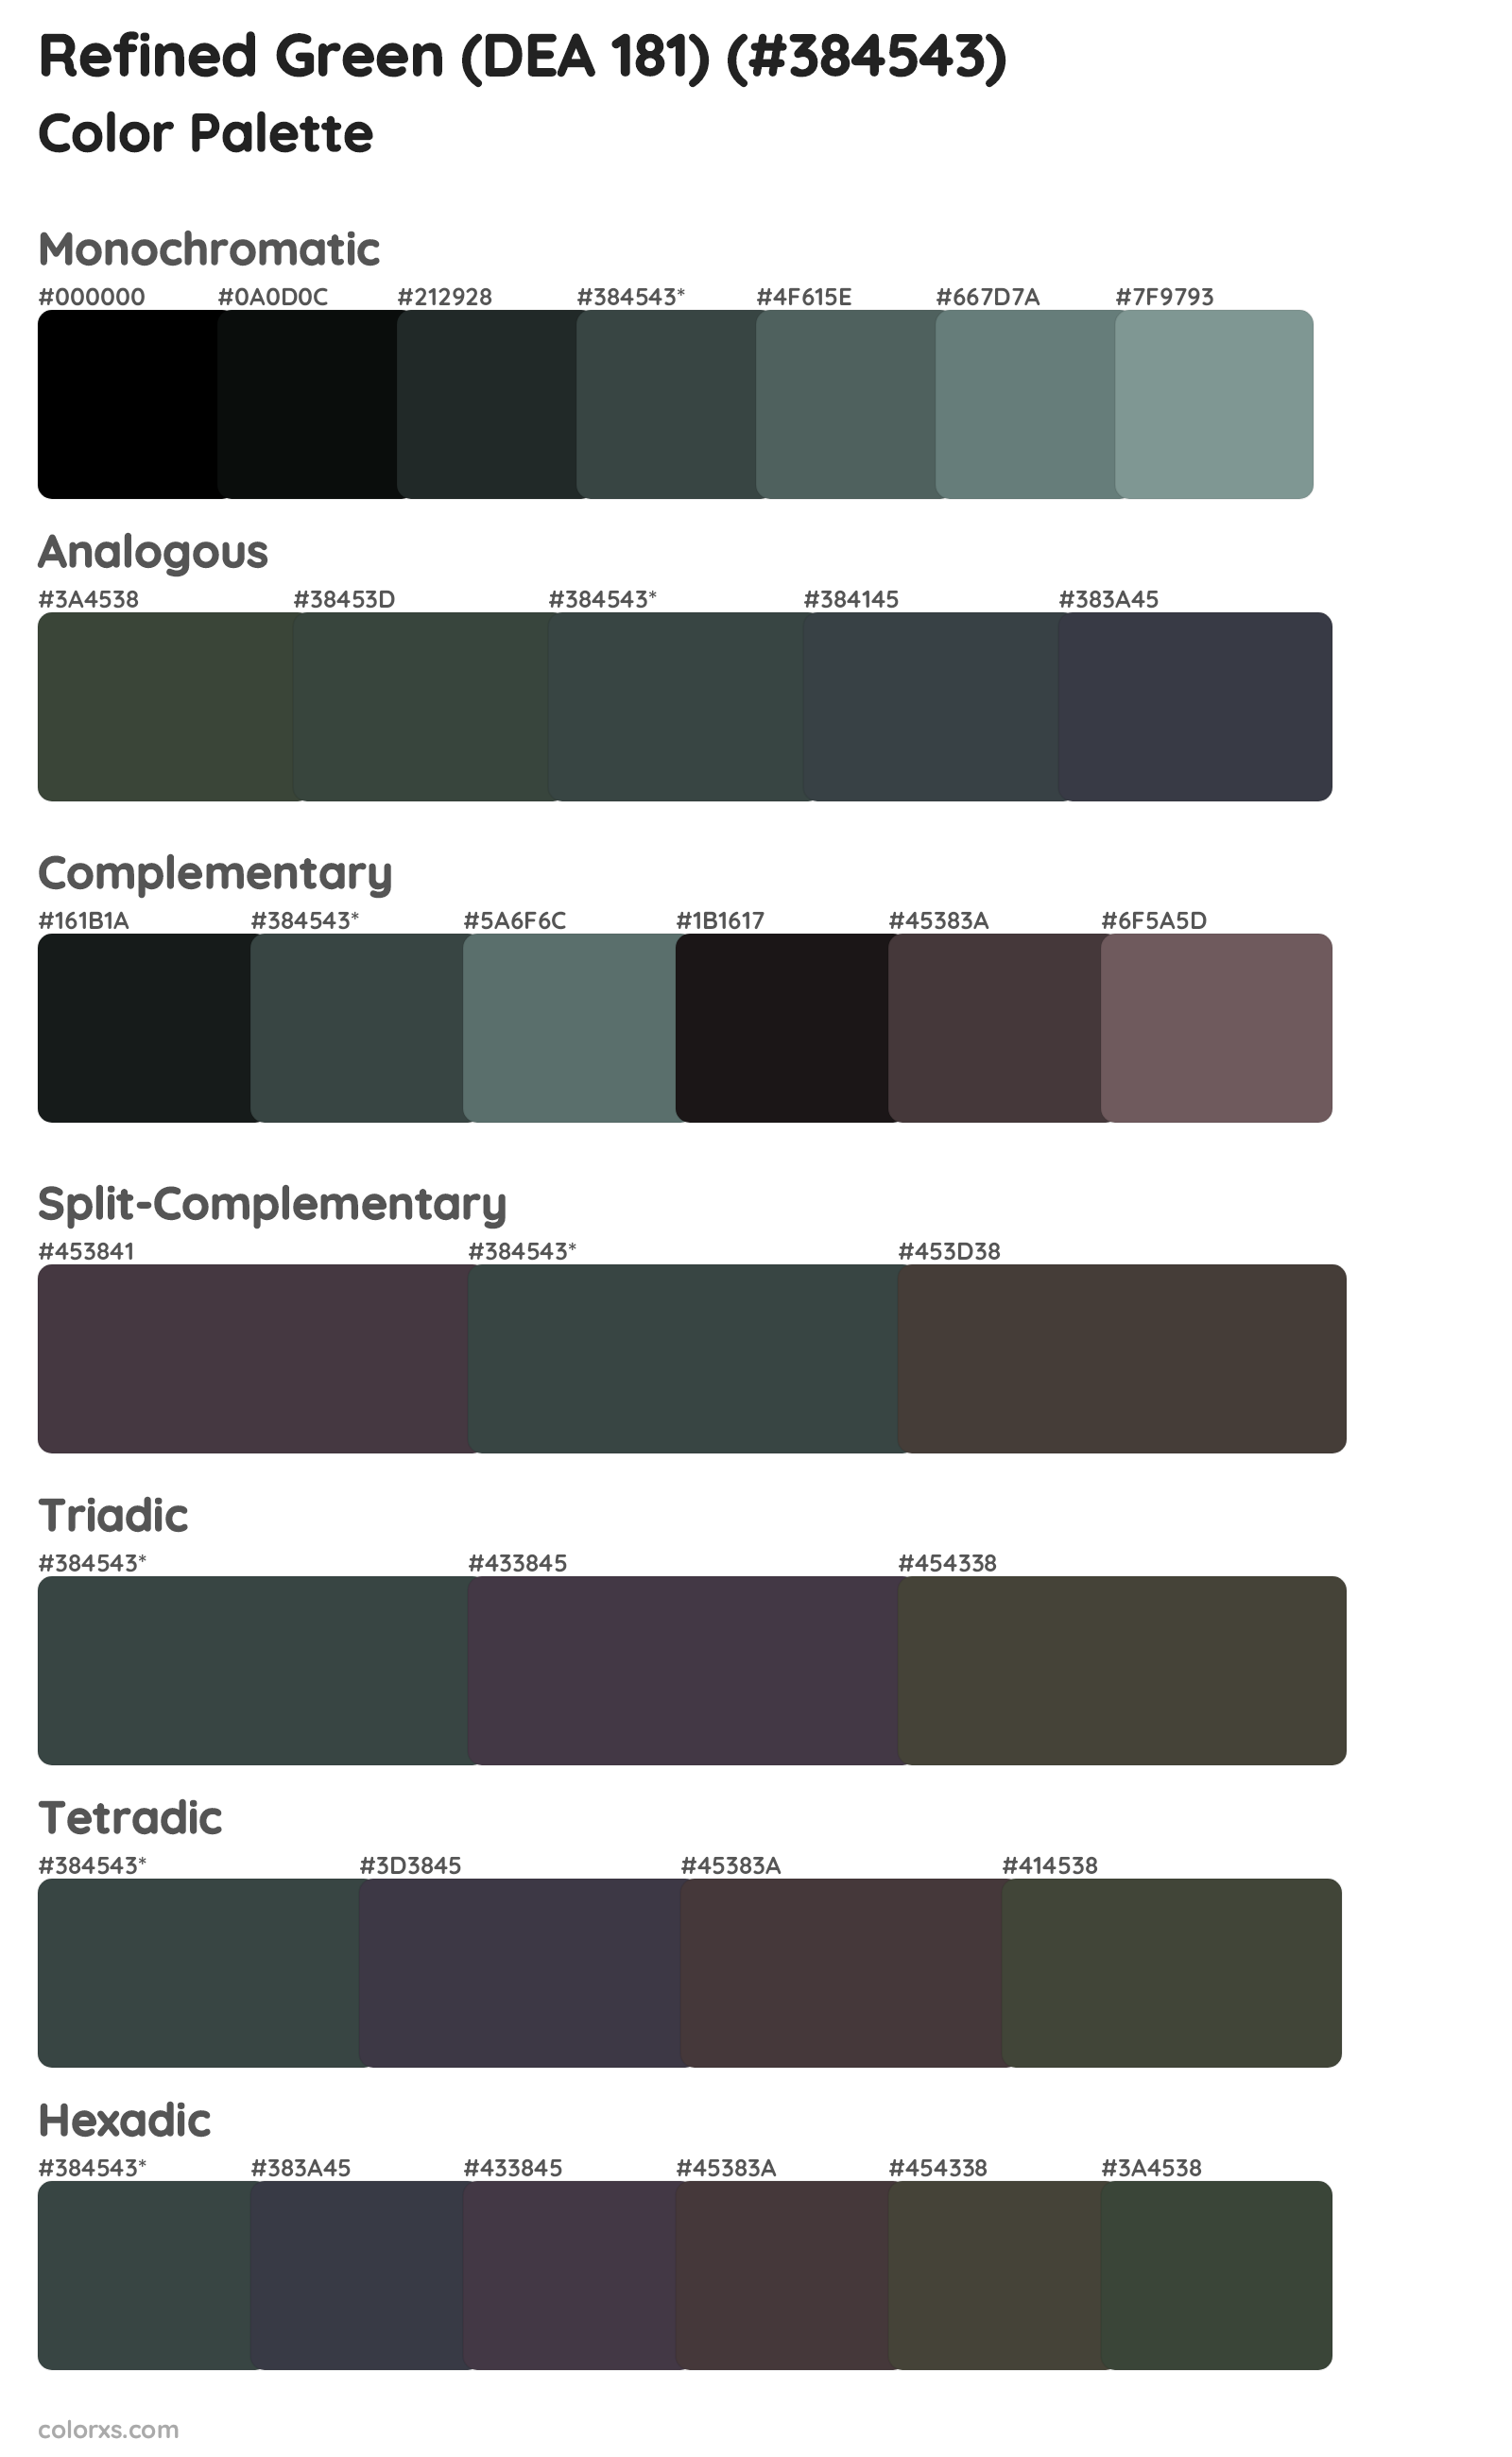 Refined Green (DEA 181) Color Scheme Palettes